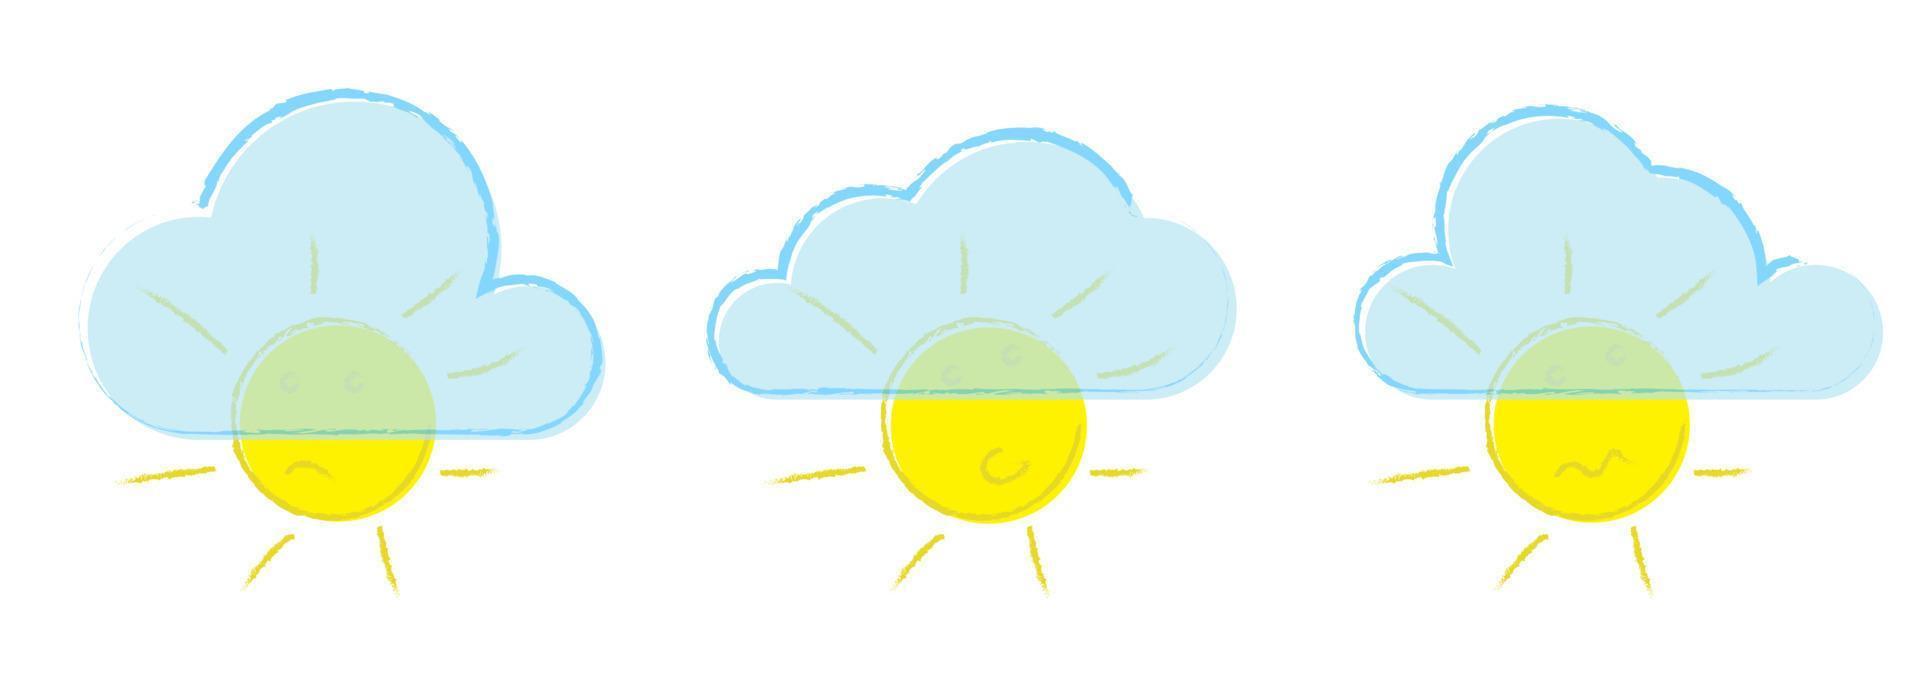 Ponga un sol de verano brillante con diferentes emociones cerradas por nubes, dibujadas a mano en estilo grunge. nublado. elemento de diseño para niños. vector aislado sobre fondo blanco